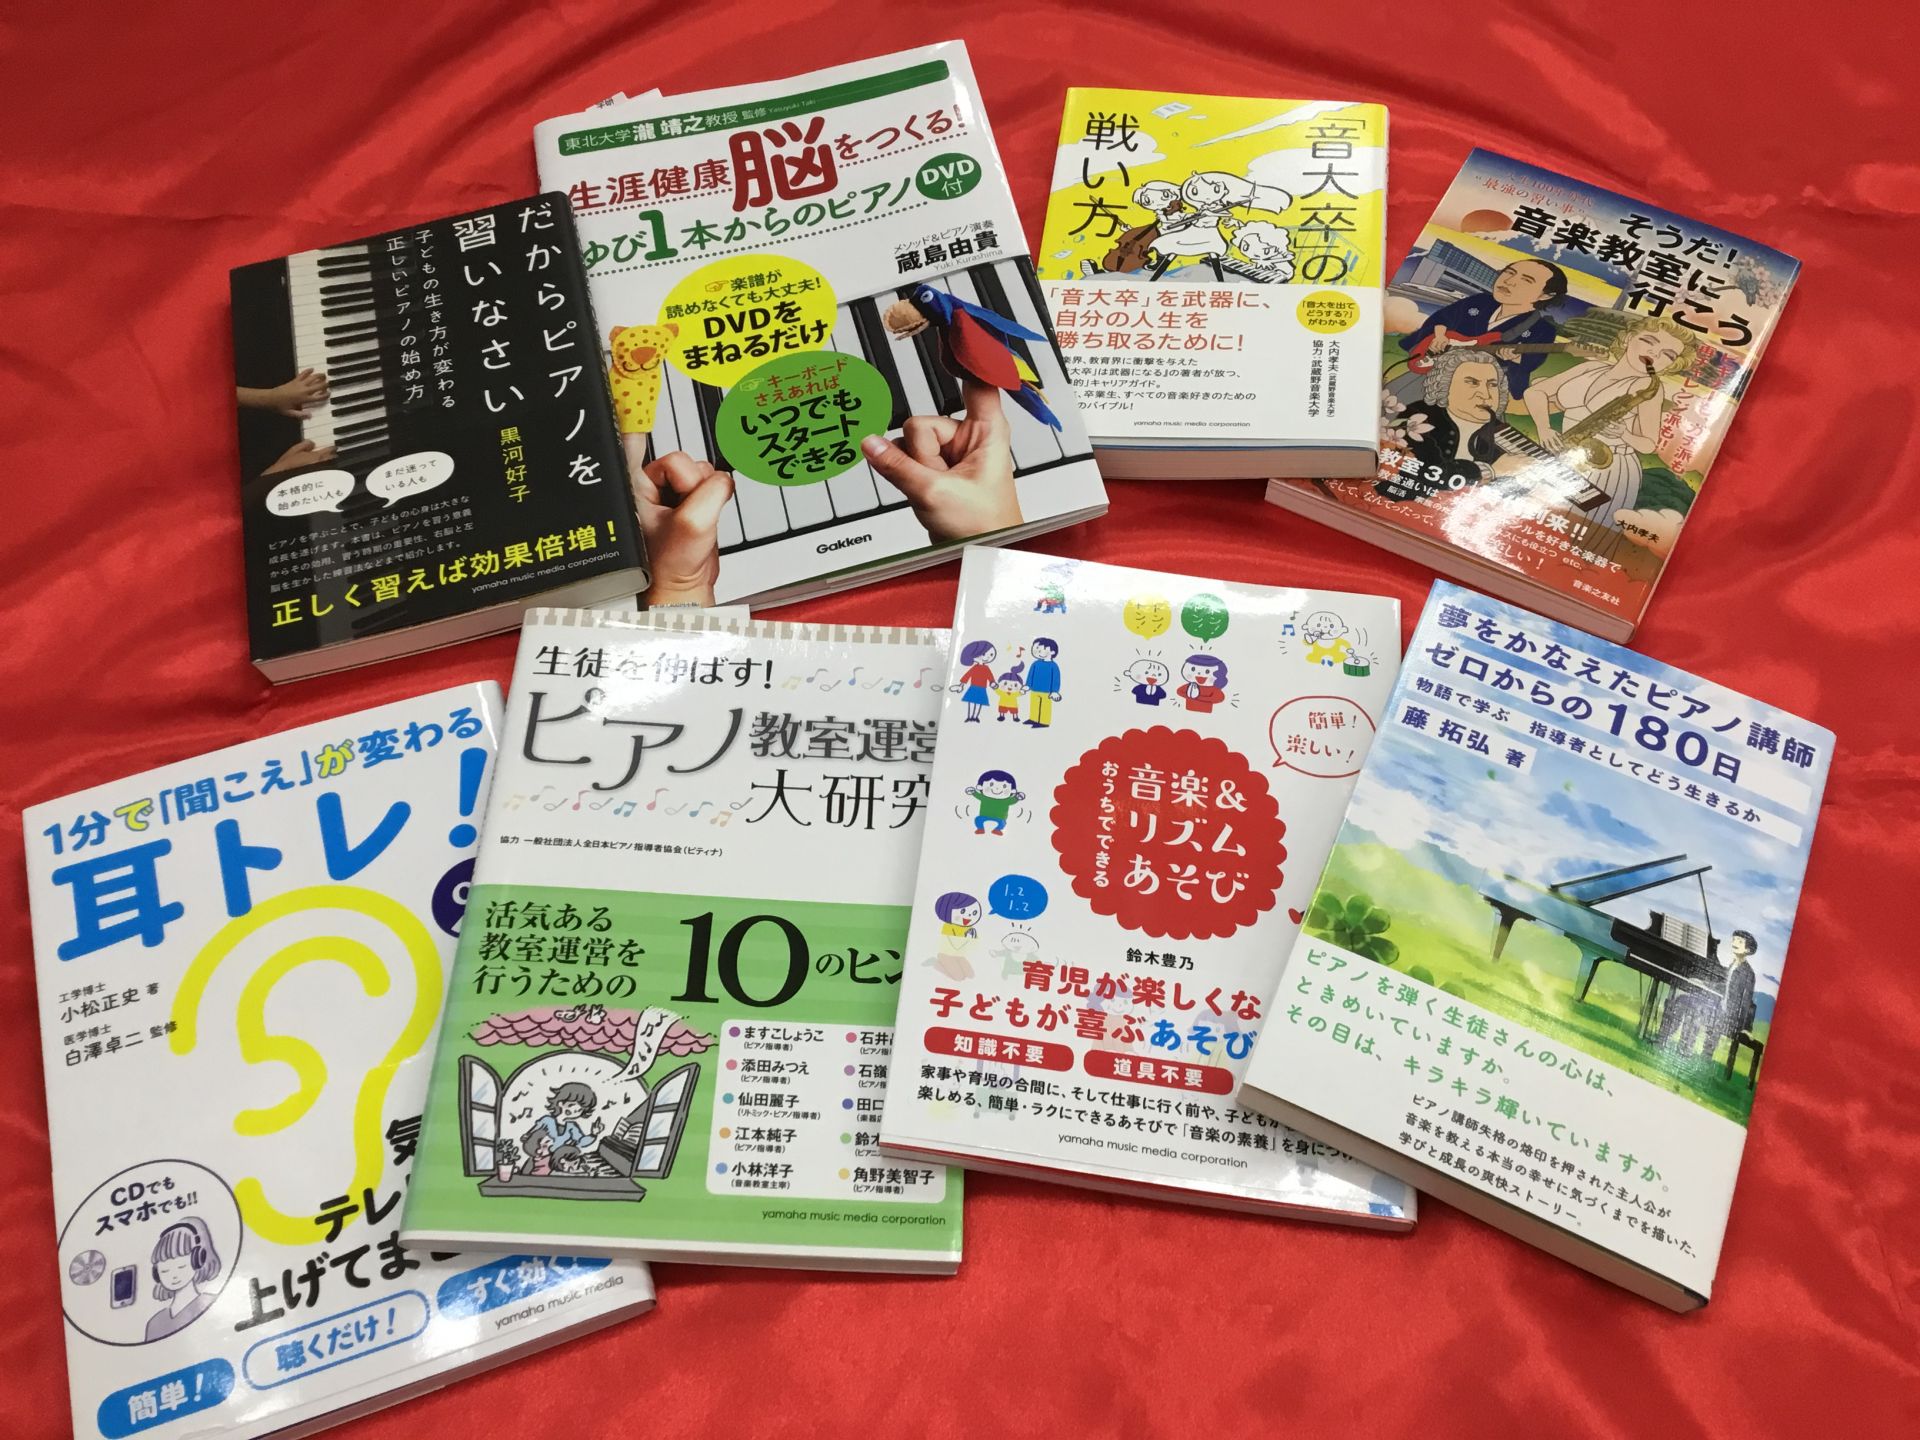 **夏だからこそ！音楽の本をゆっくり楽しみませんか? 読書の秋はまだだいぶ先ですが、夏だからこそゆっくりと読書をするのはいかがですか？今回は楽譜ではなく、音楽の書籍をご案内いたします♪ *書籍の紹介 [!（クリックで移動します）!] |[#dream:title=]|[#shougaikenkou: […]